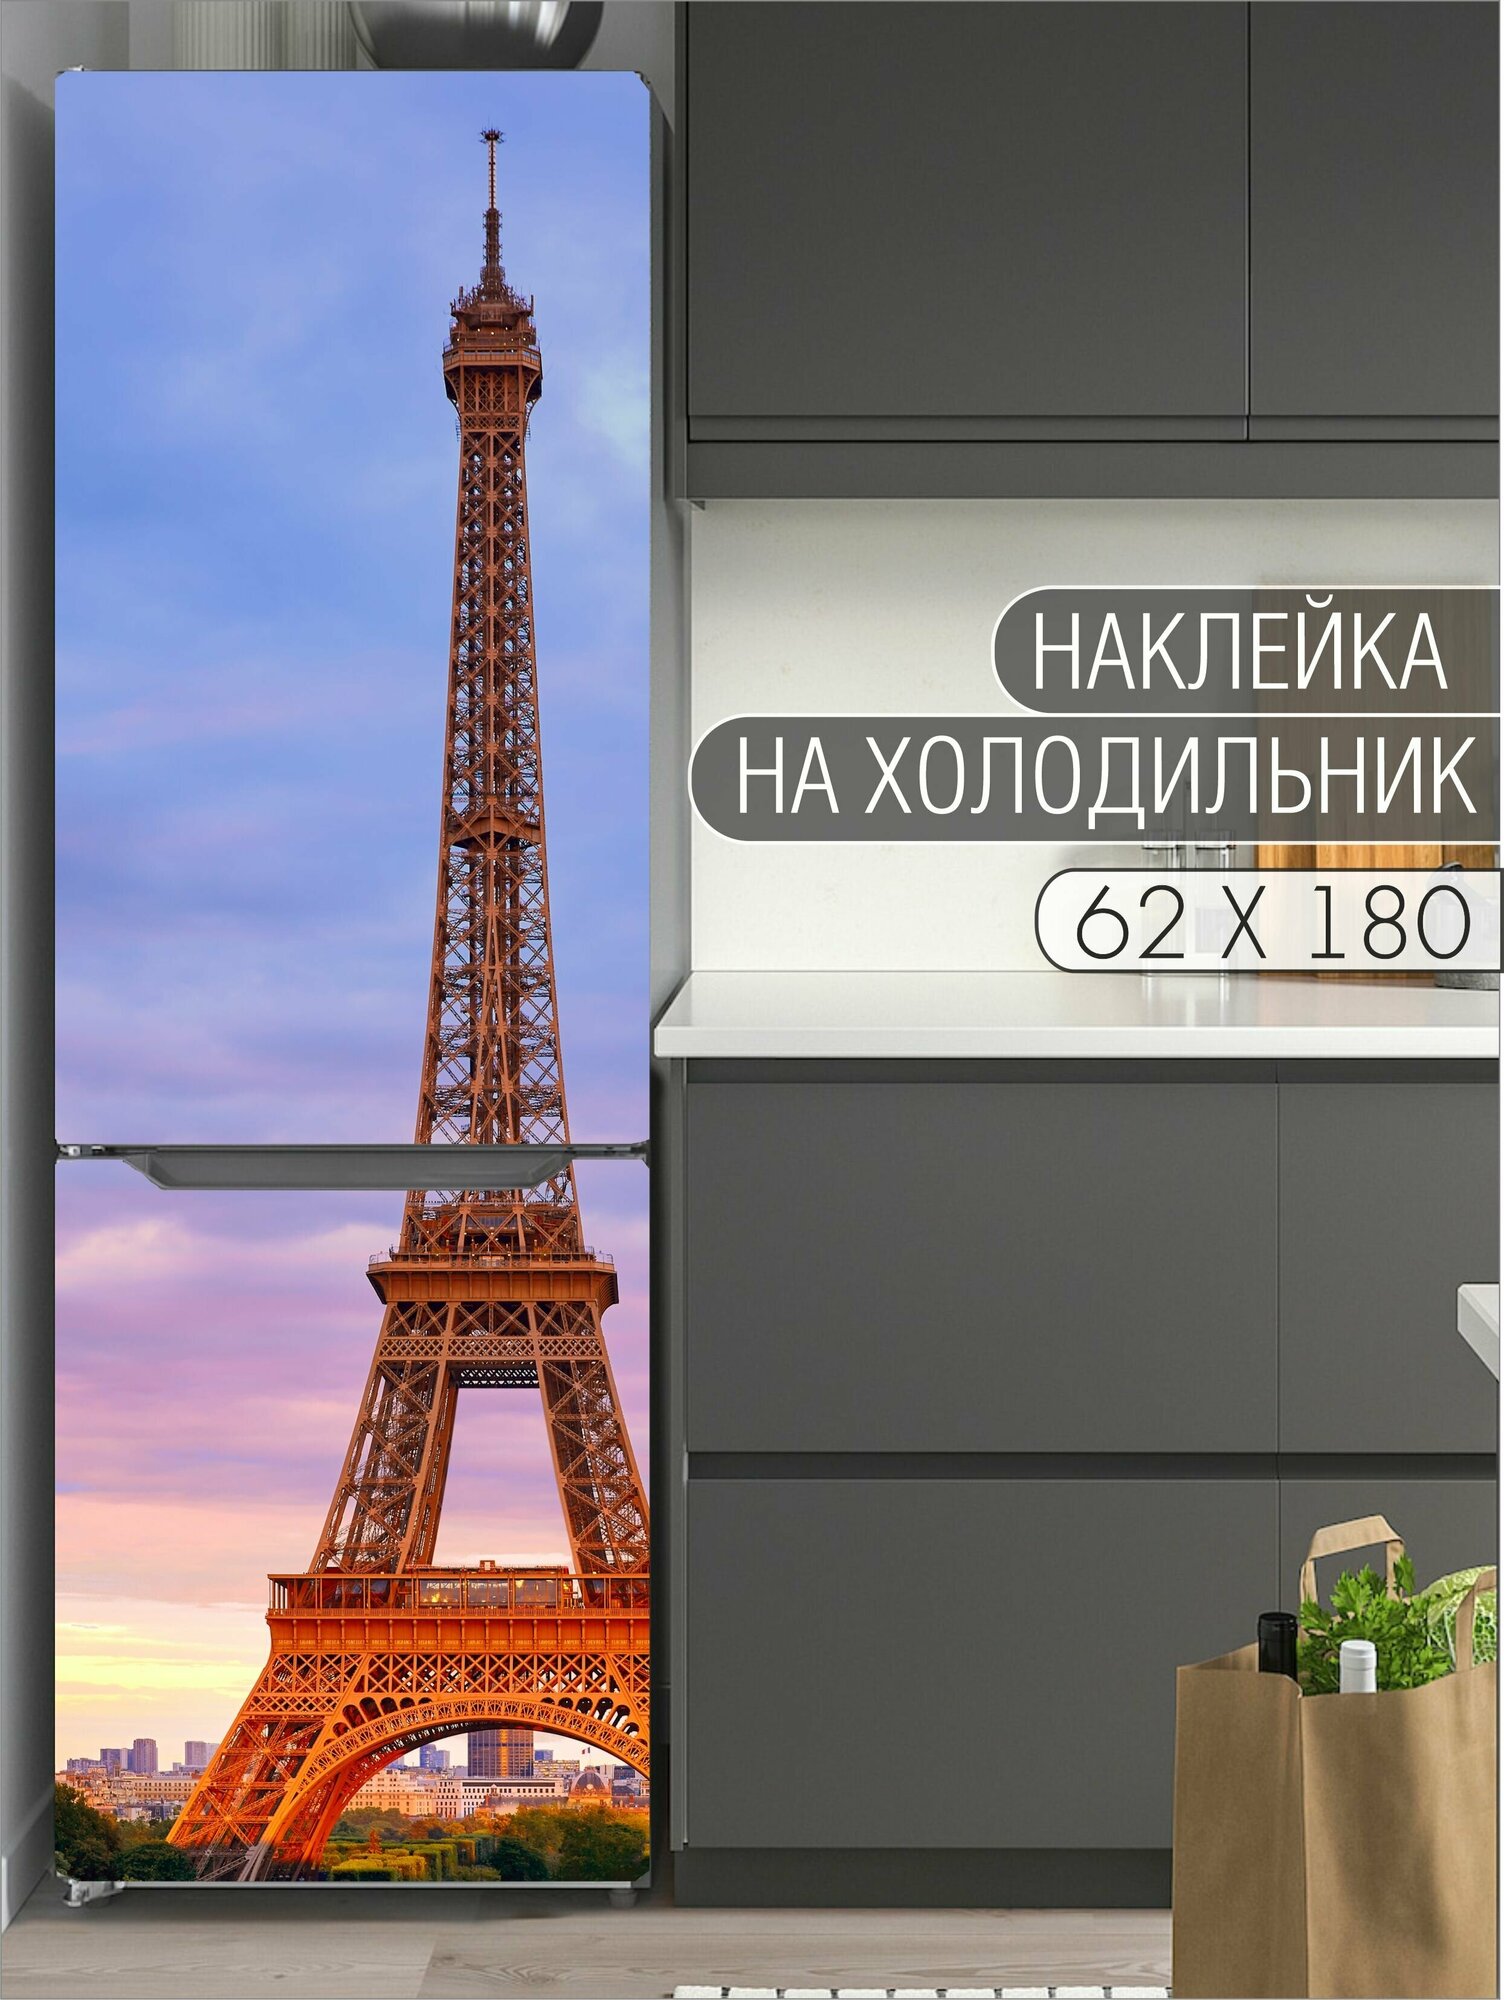 Интерьерная наклейка на холодильник "Эйфелева башня" для декора дома, размер 62х180 см